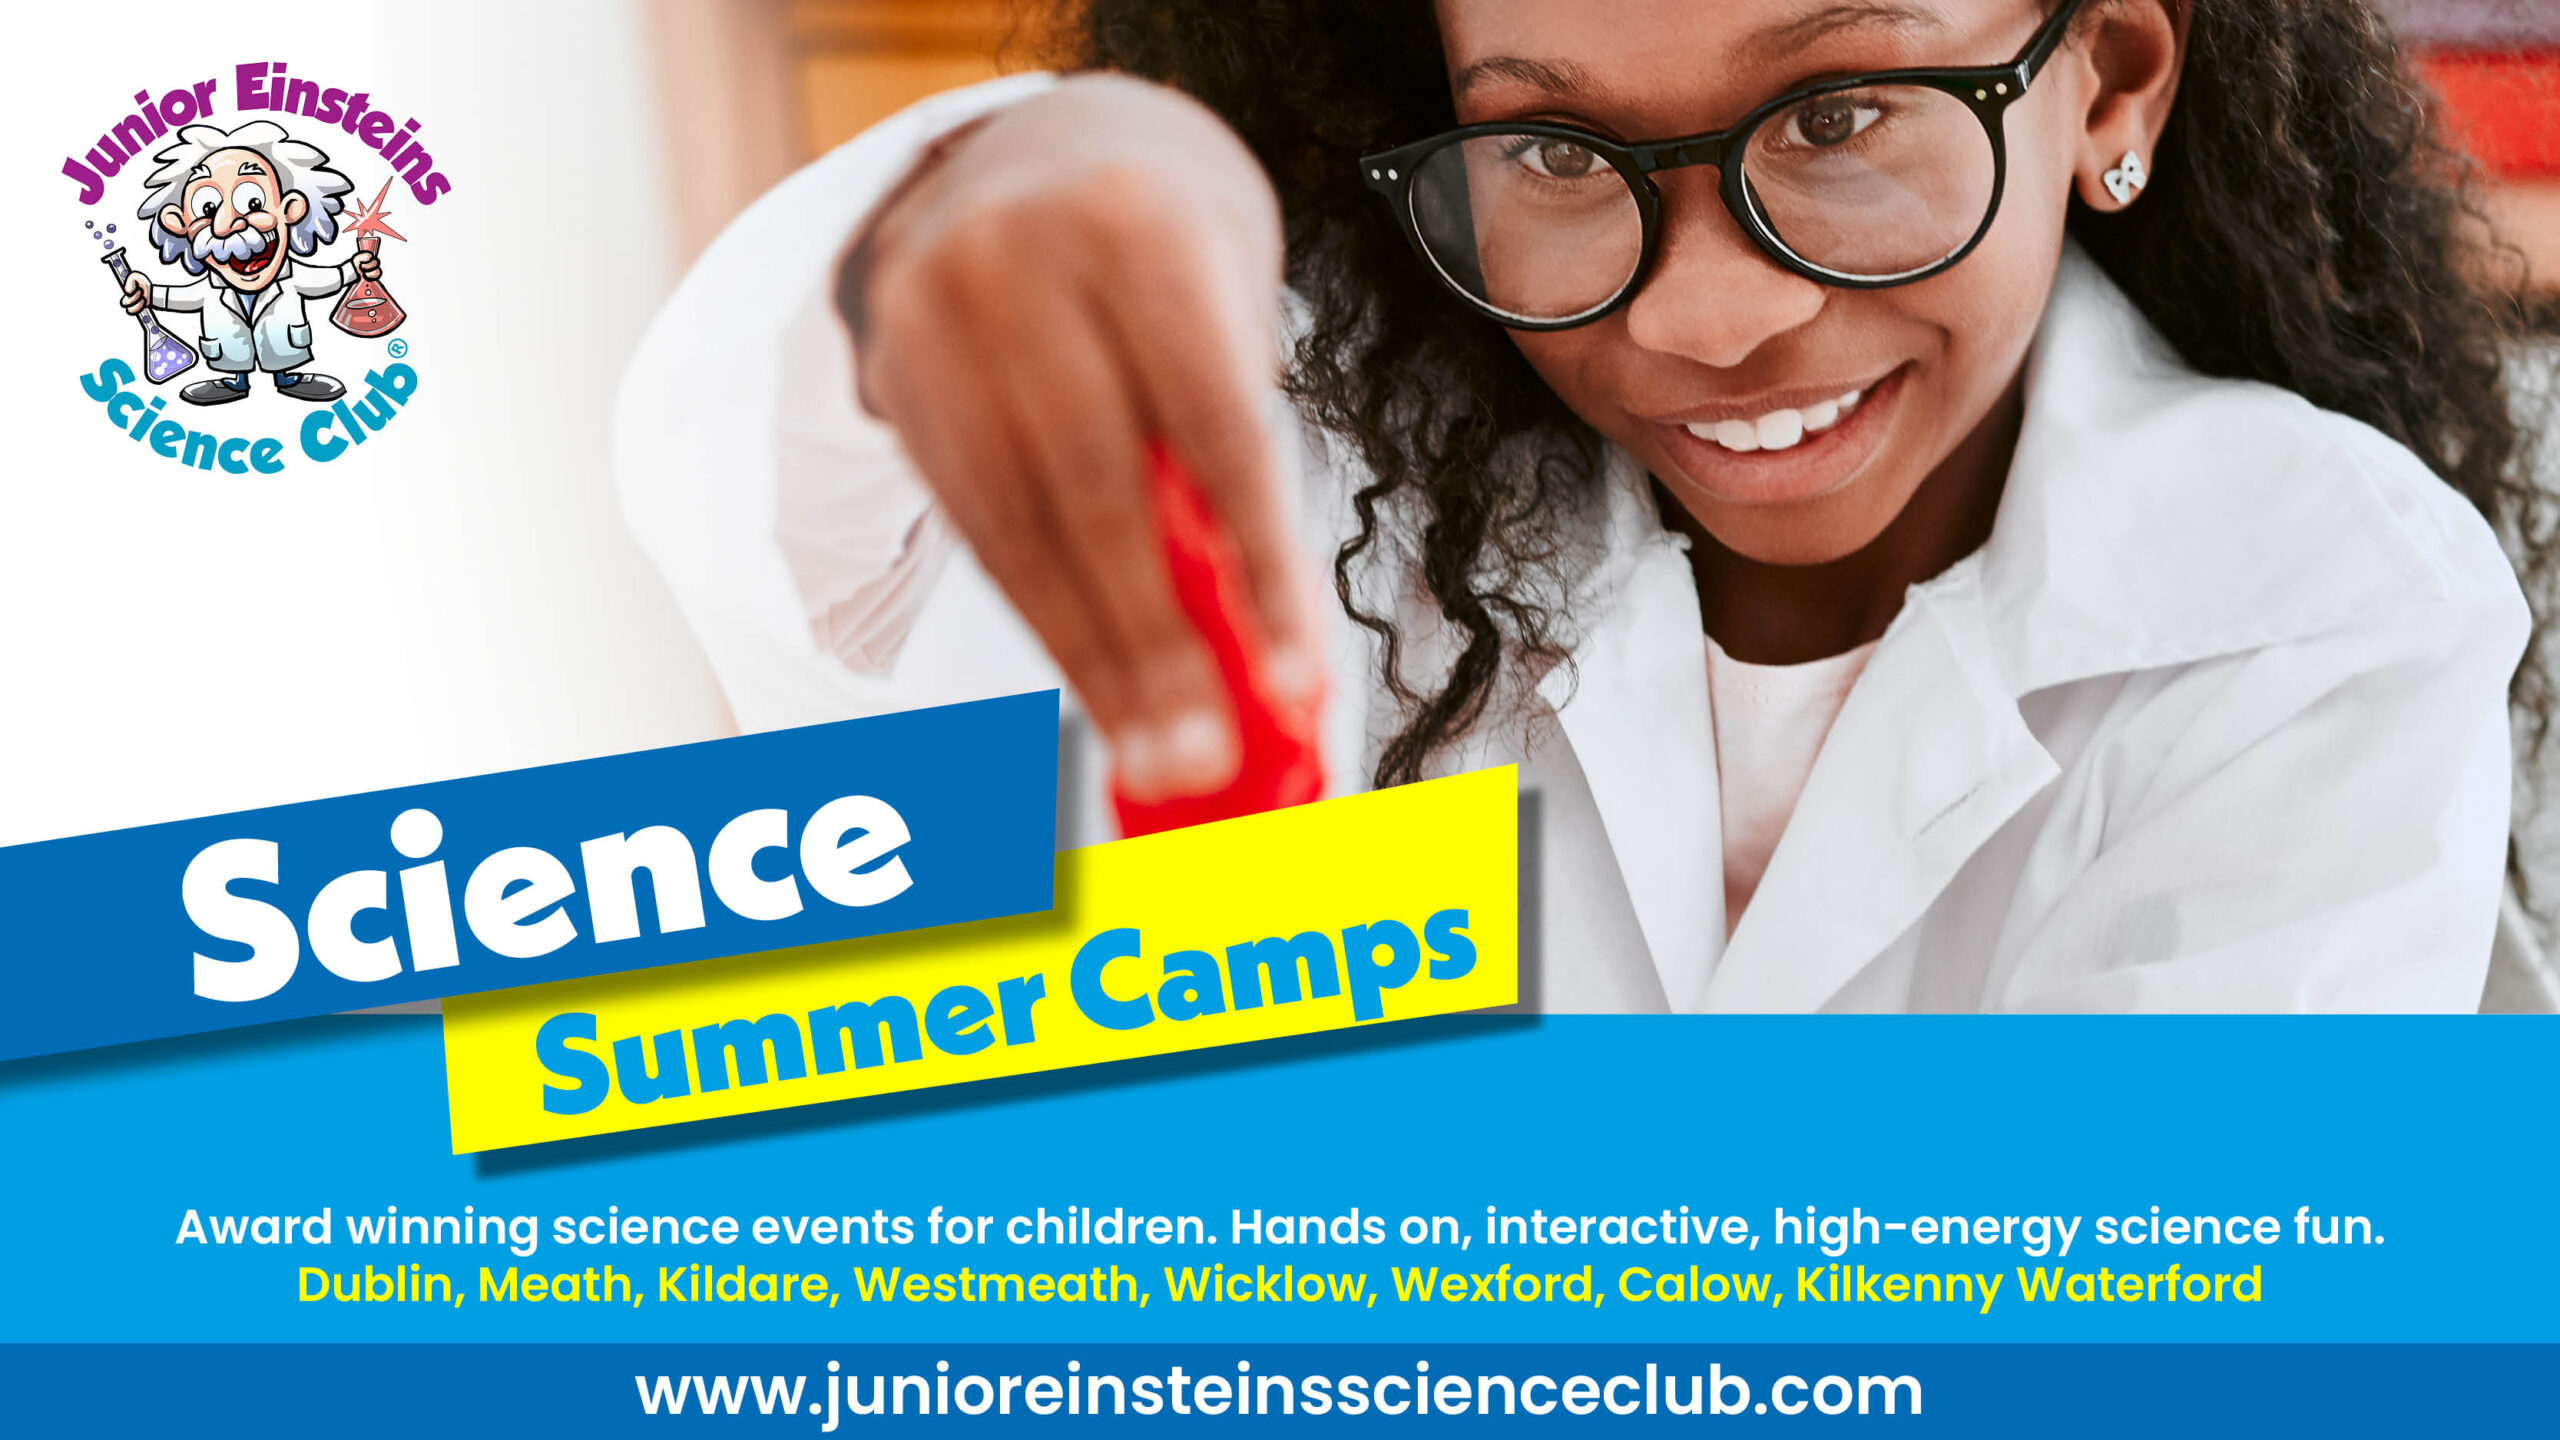 Greystones, Wicklow - Science Summer Camp